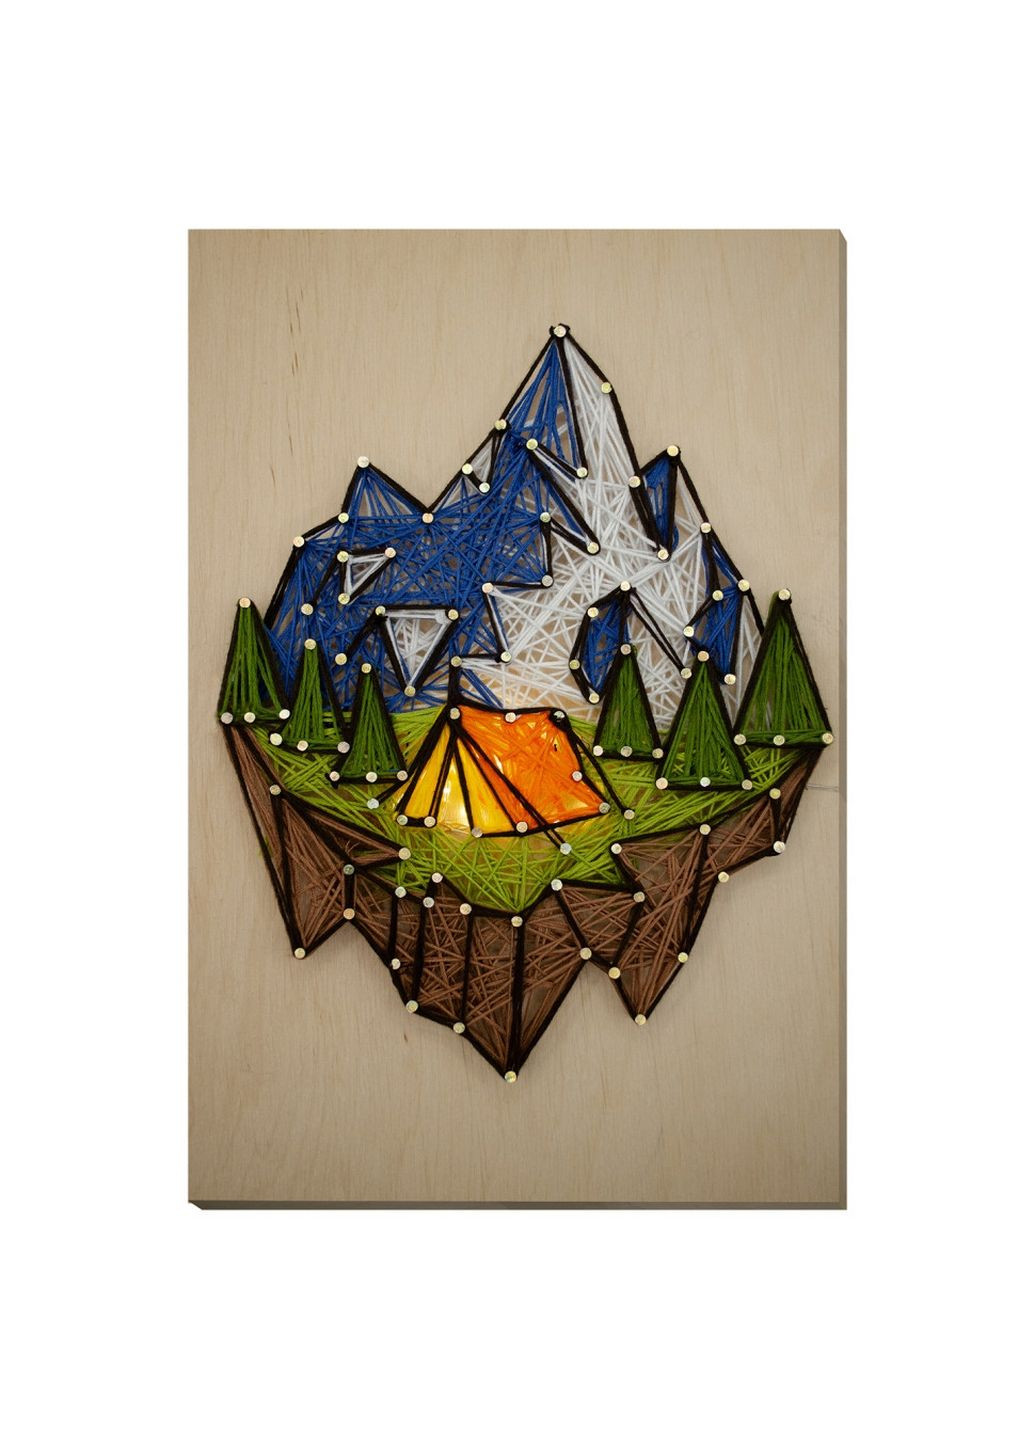 Набор стринг-арт "У подножия горы" деревянная основа Abris Art (288183651)